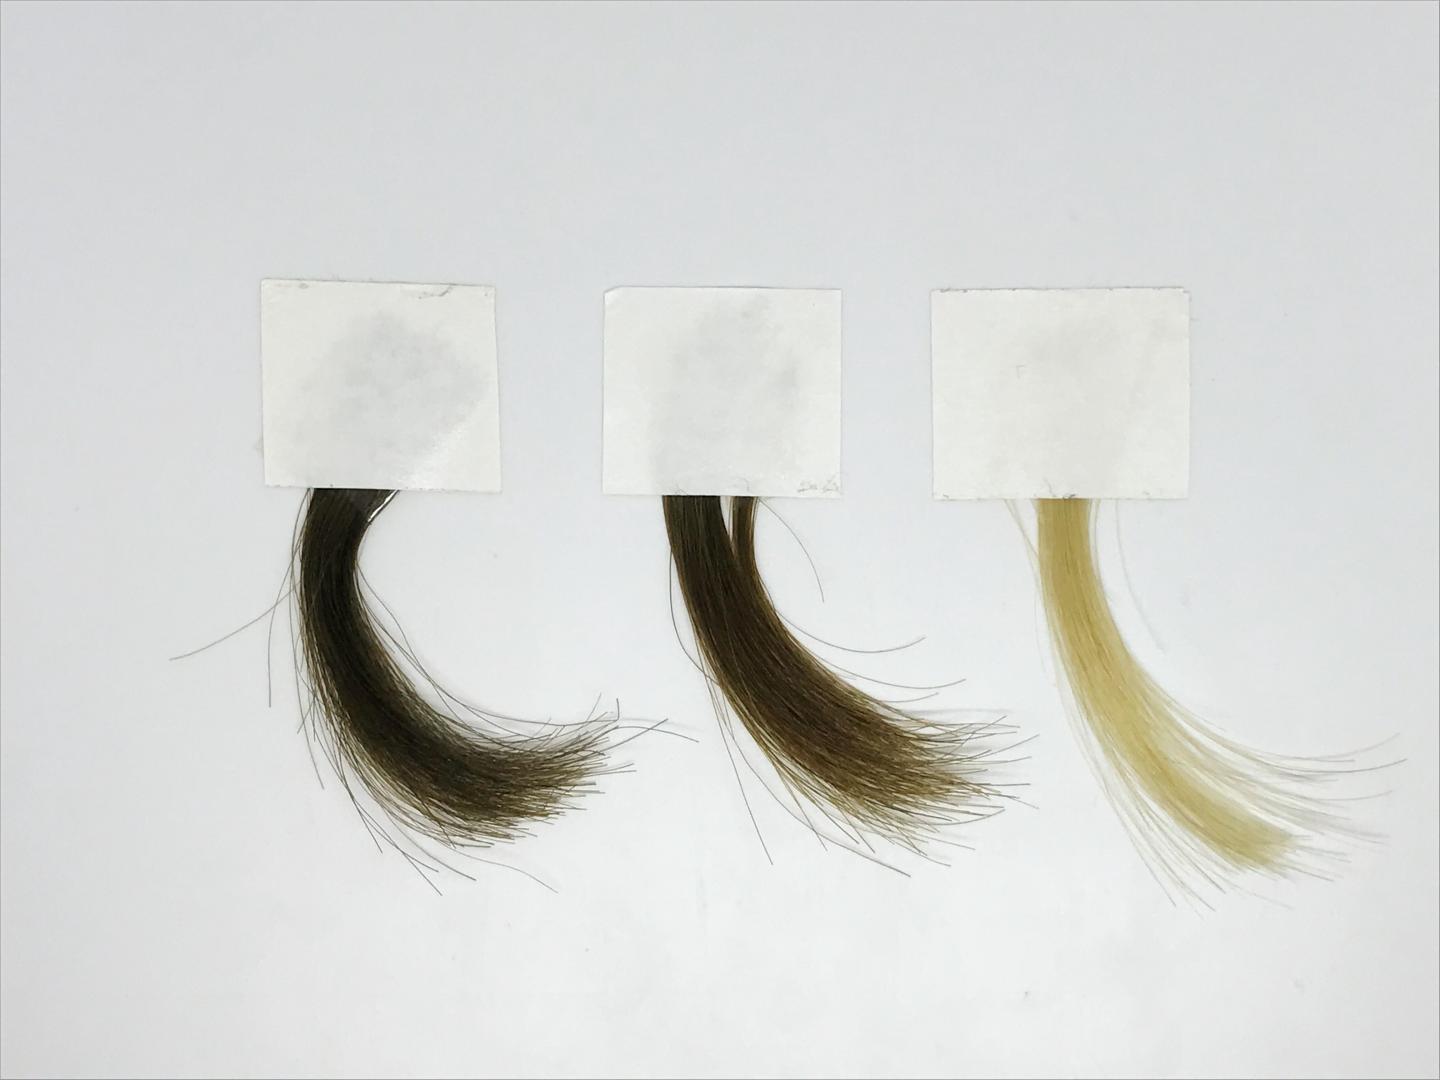 A Milder Hair Dye Based on Synthetic Melanin